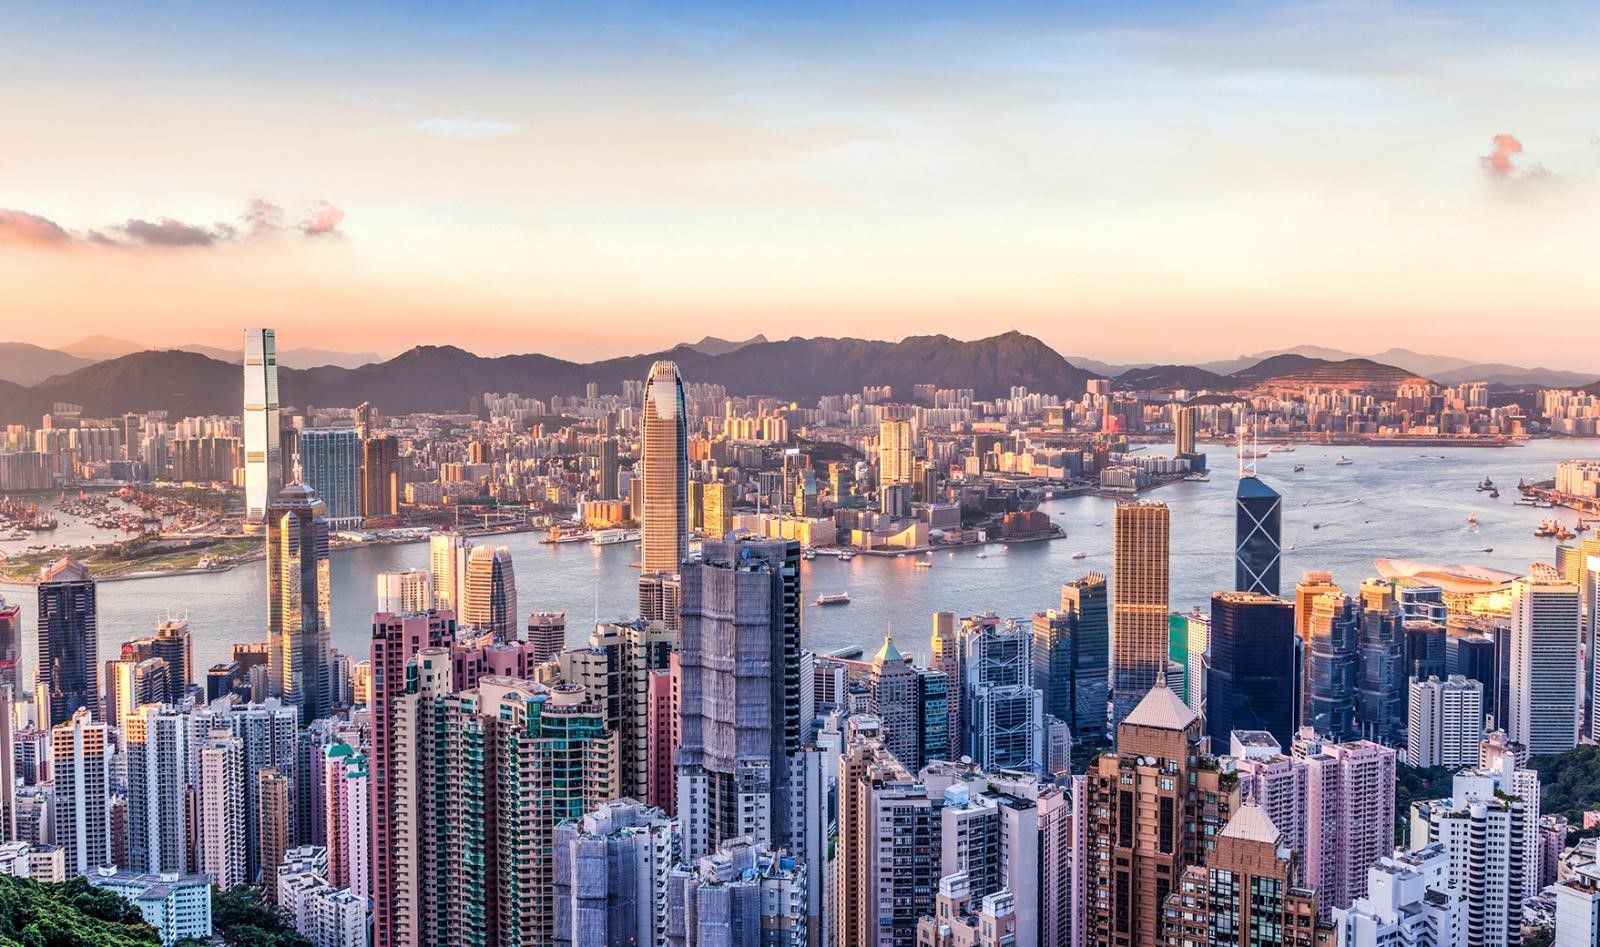 عقارات جميرا للجولف تستعد للفت أنظار المستثمرين في هونج كونج والصين في معرض دبي العقاري المقبل